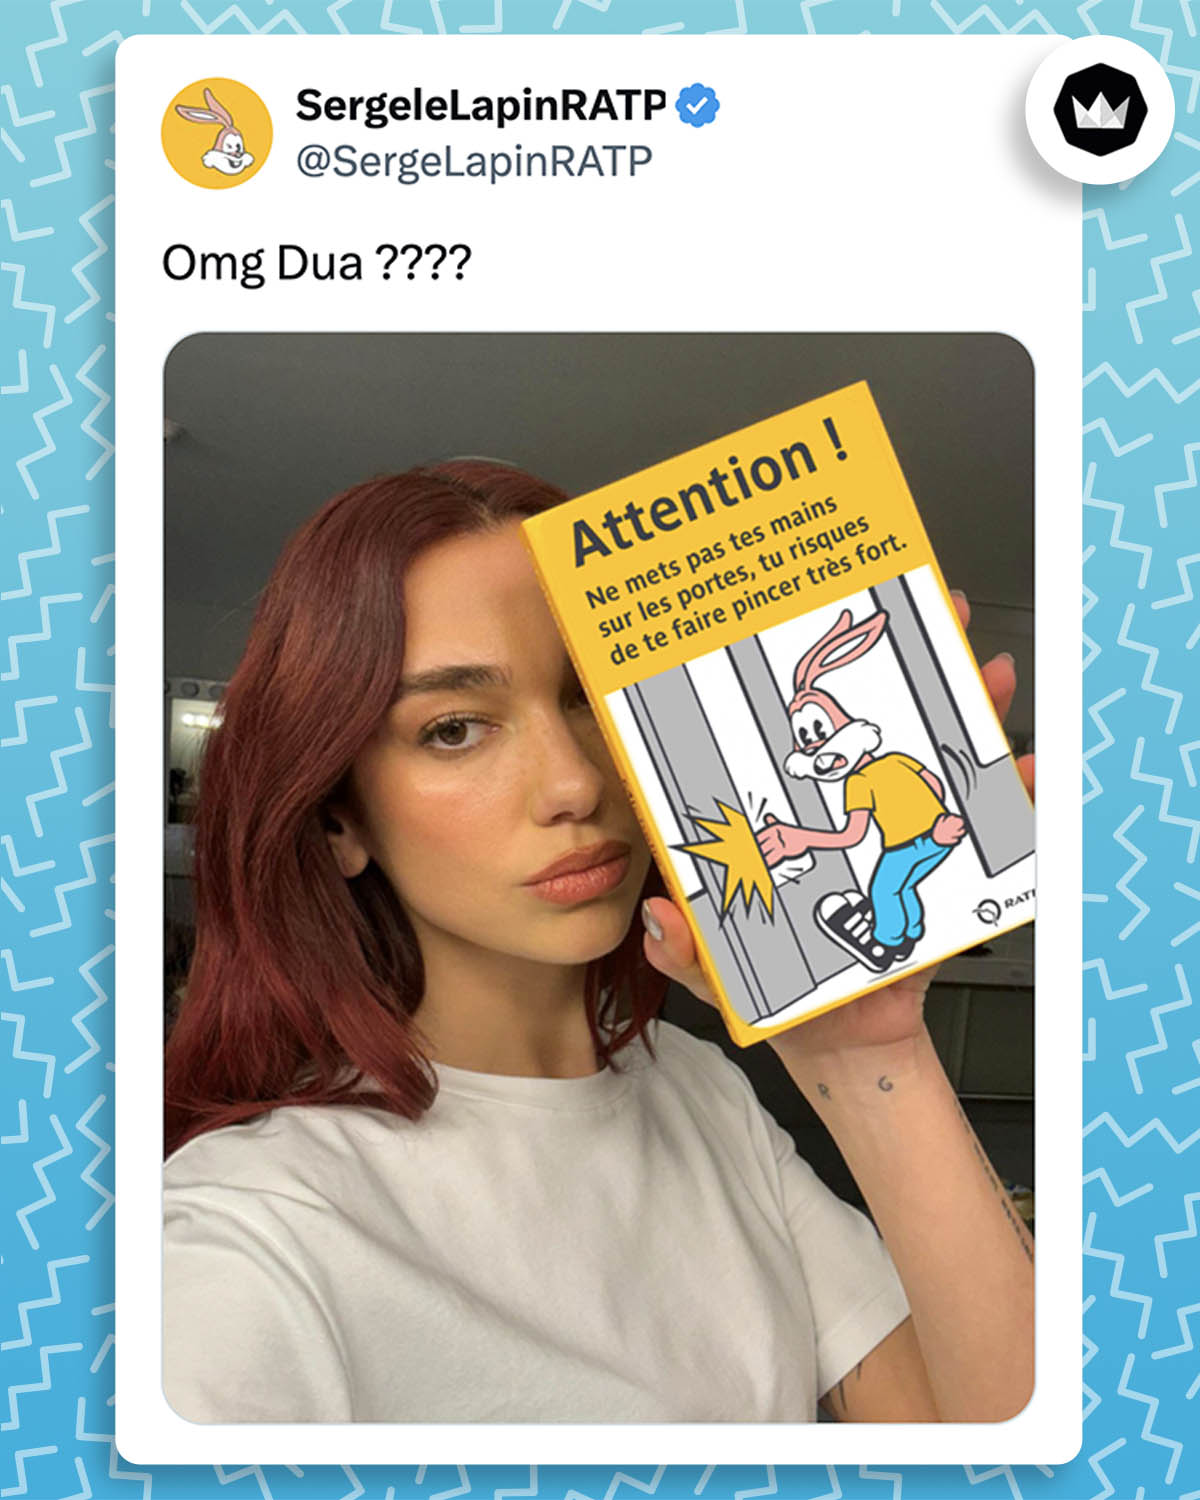 Tweet de SergeLapinRATP : 
"OMG Dua ????" avec la photo de Dua Lipa tenant l'affiche de Serge le Lapin "Attention ! Ne mets pas tes mains sur les portes, tu risques de te faire pincer très fort".